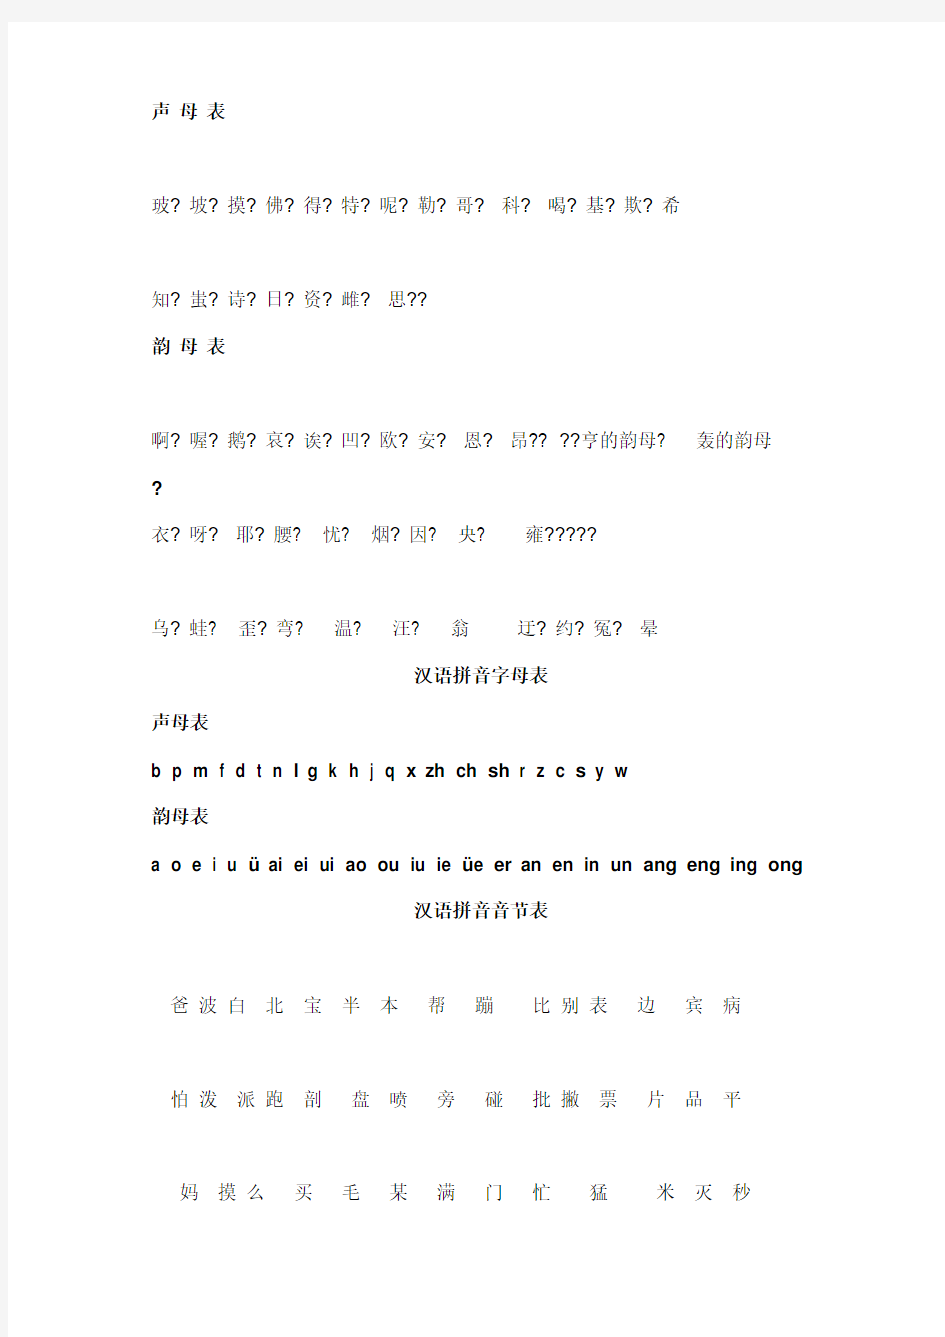 汉语拼音读法(中老年人学习拼音)